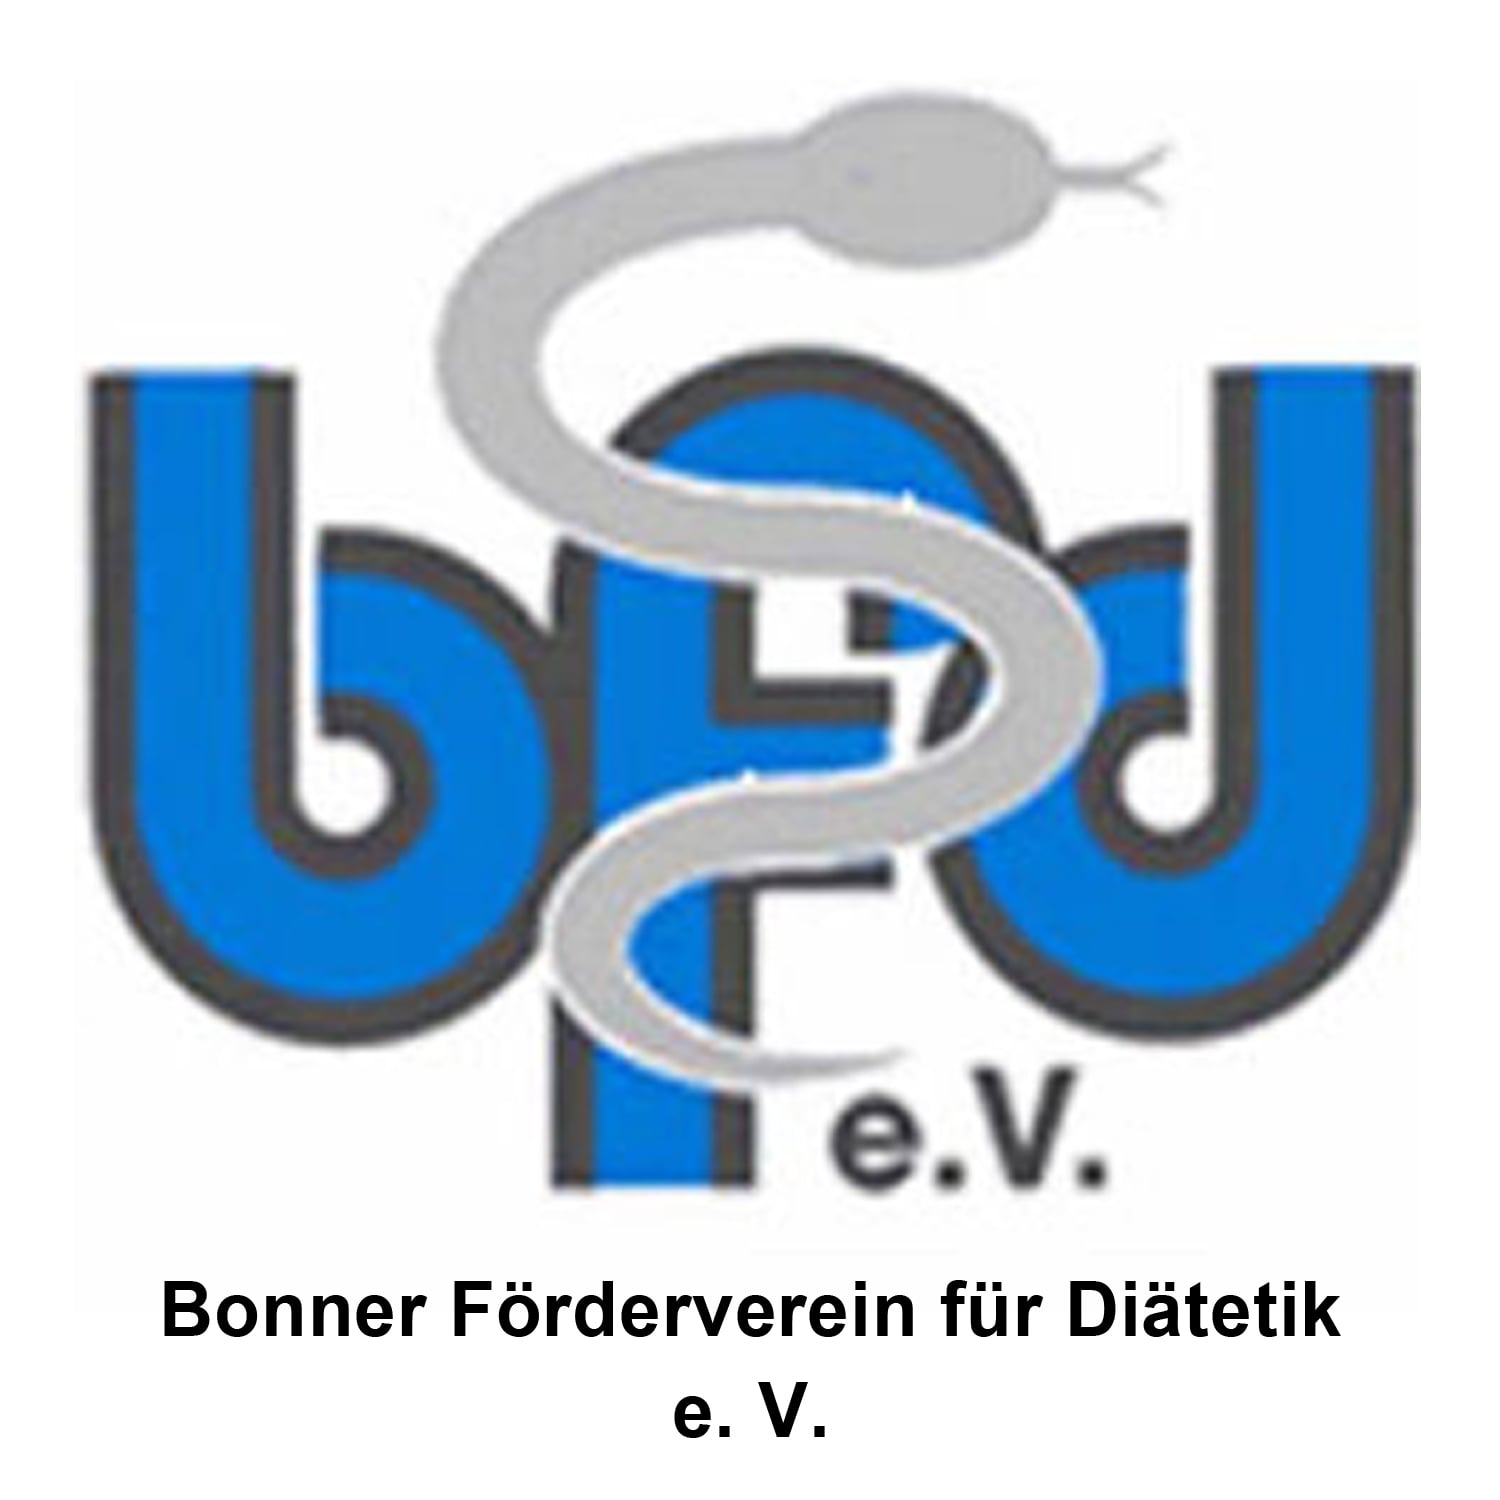 Bonner Förderverein für Diätetik e.V. - BFD